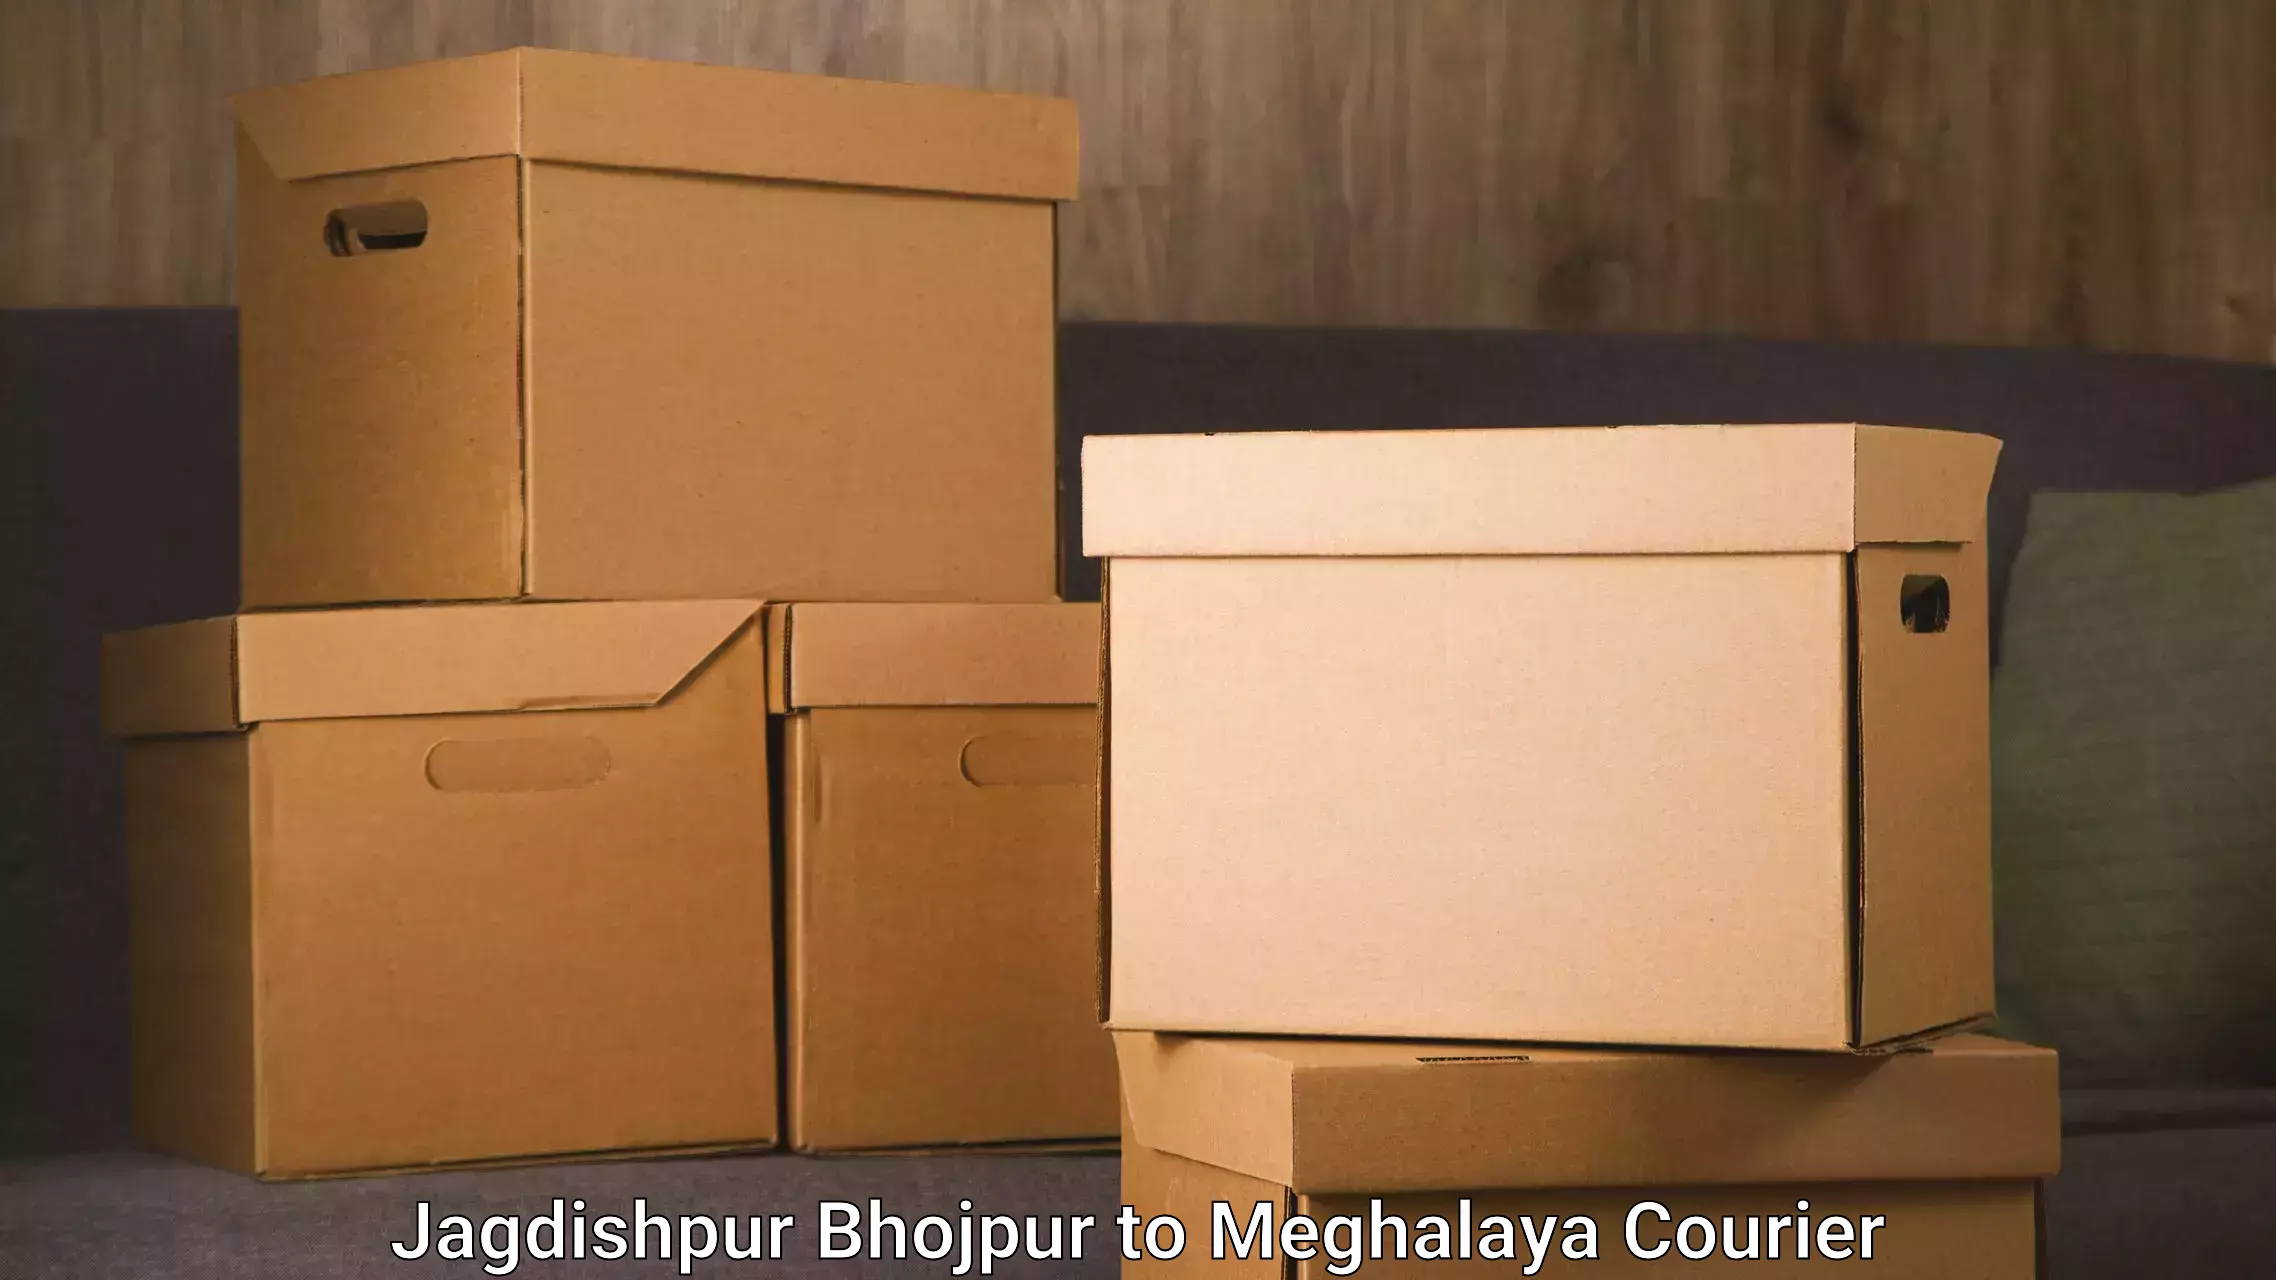 Furniture transport professionals Jagdishpur Bhojpur to Meghalaya